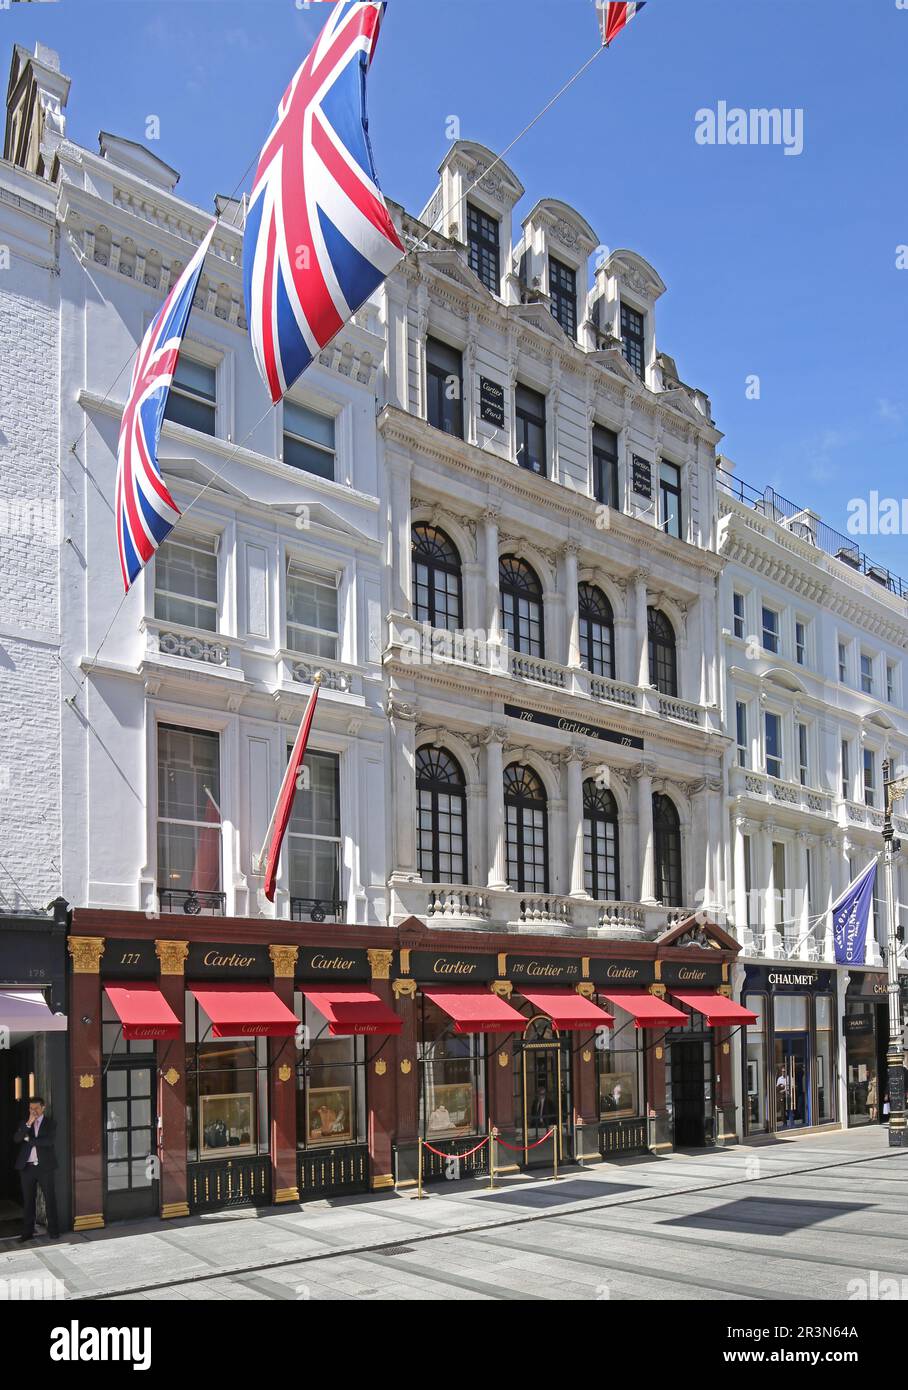 Vista esterna della lussuosa gioielleria Boutique Cartier sulla New Bond Street di Londra, nel cuore del ricco quartiere Mayfair. Foto Stock